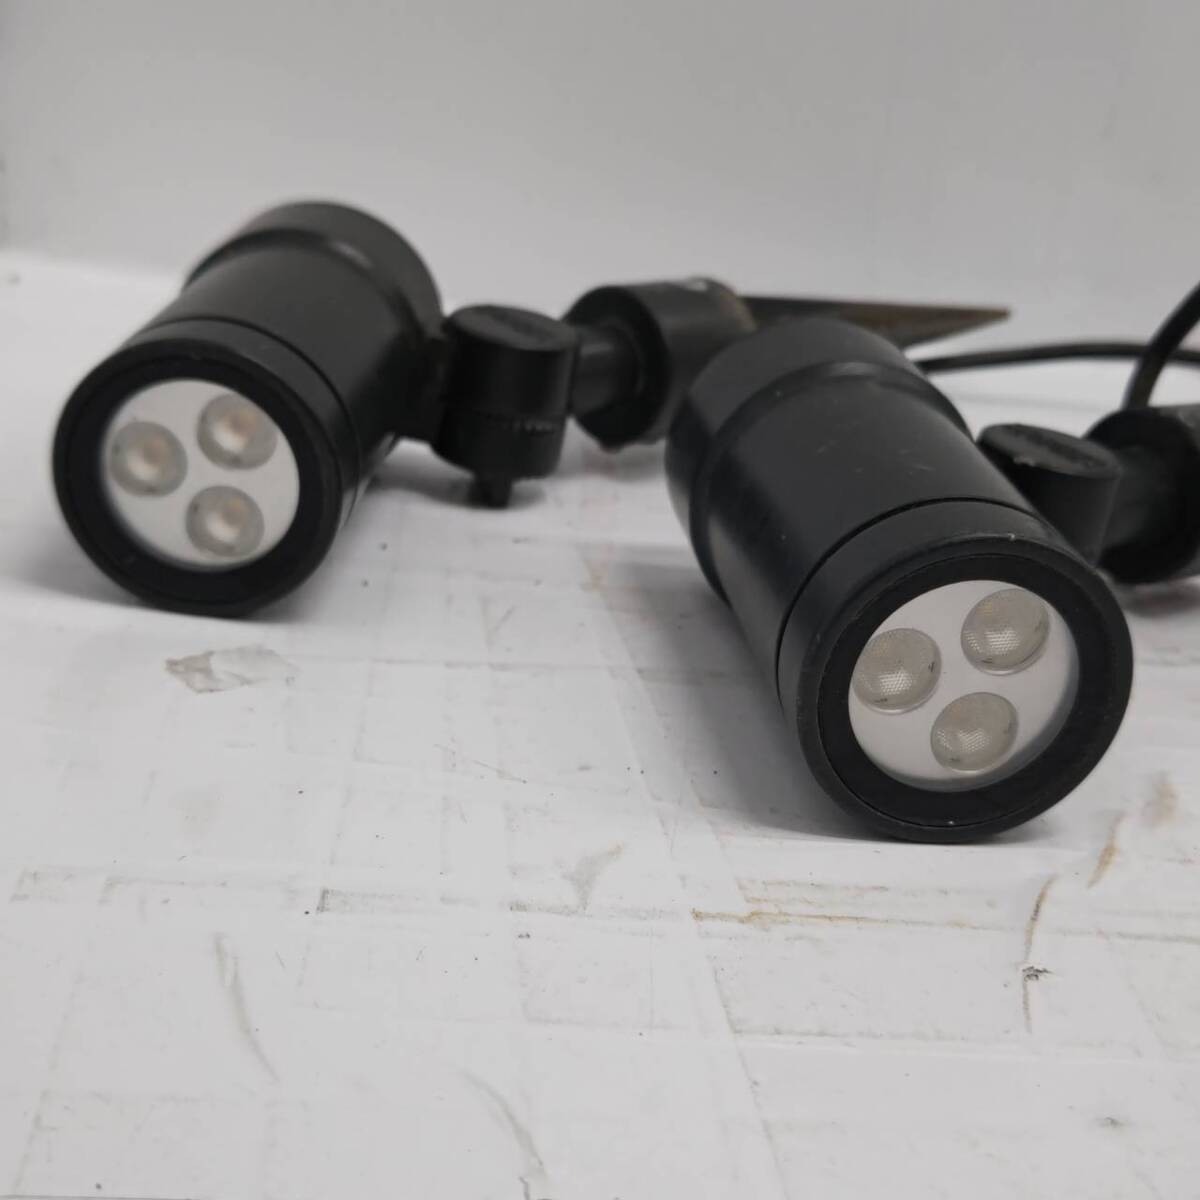 送料無料h58041 LED照明器具 2点セット HFE-D67C タカショーデジテック スポットライト 屋外用 園芸 イルミネーション 100V 7.2W_画像2